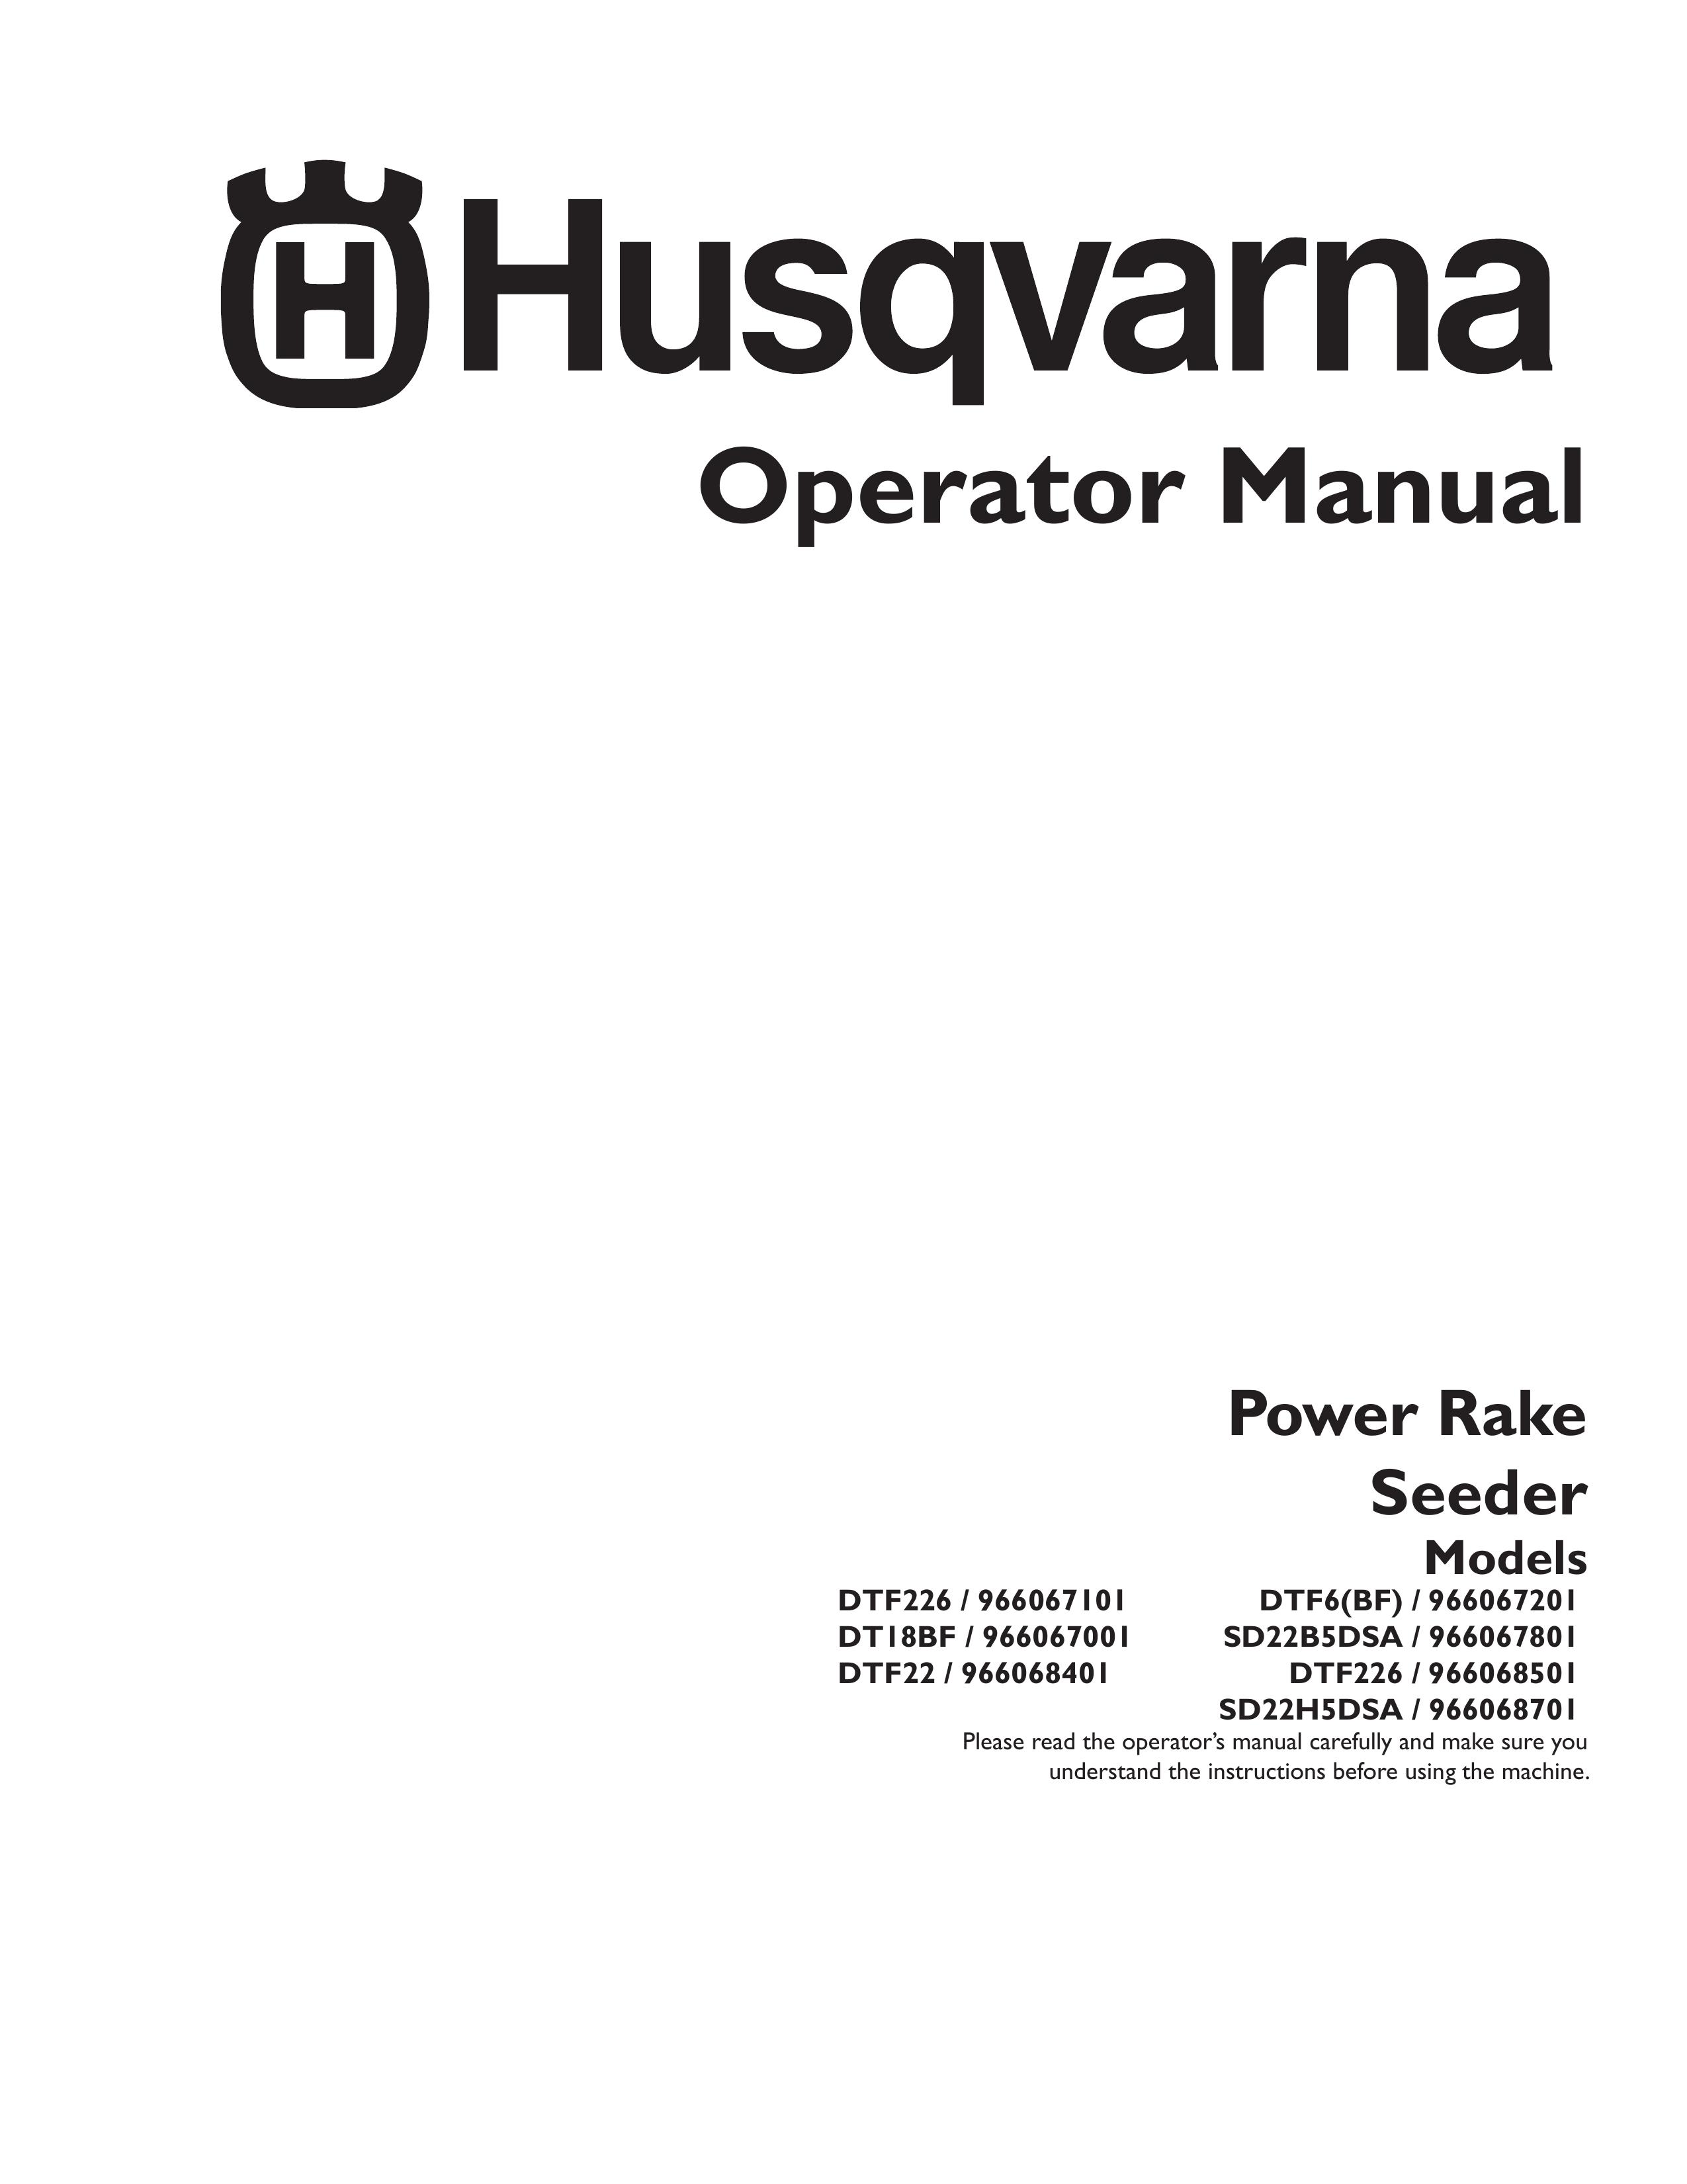 Husqvarna 966067101 Spreader User Manual